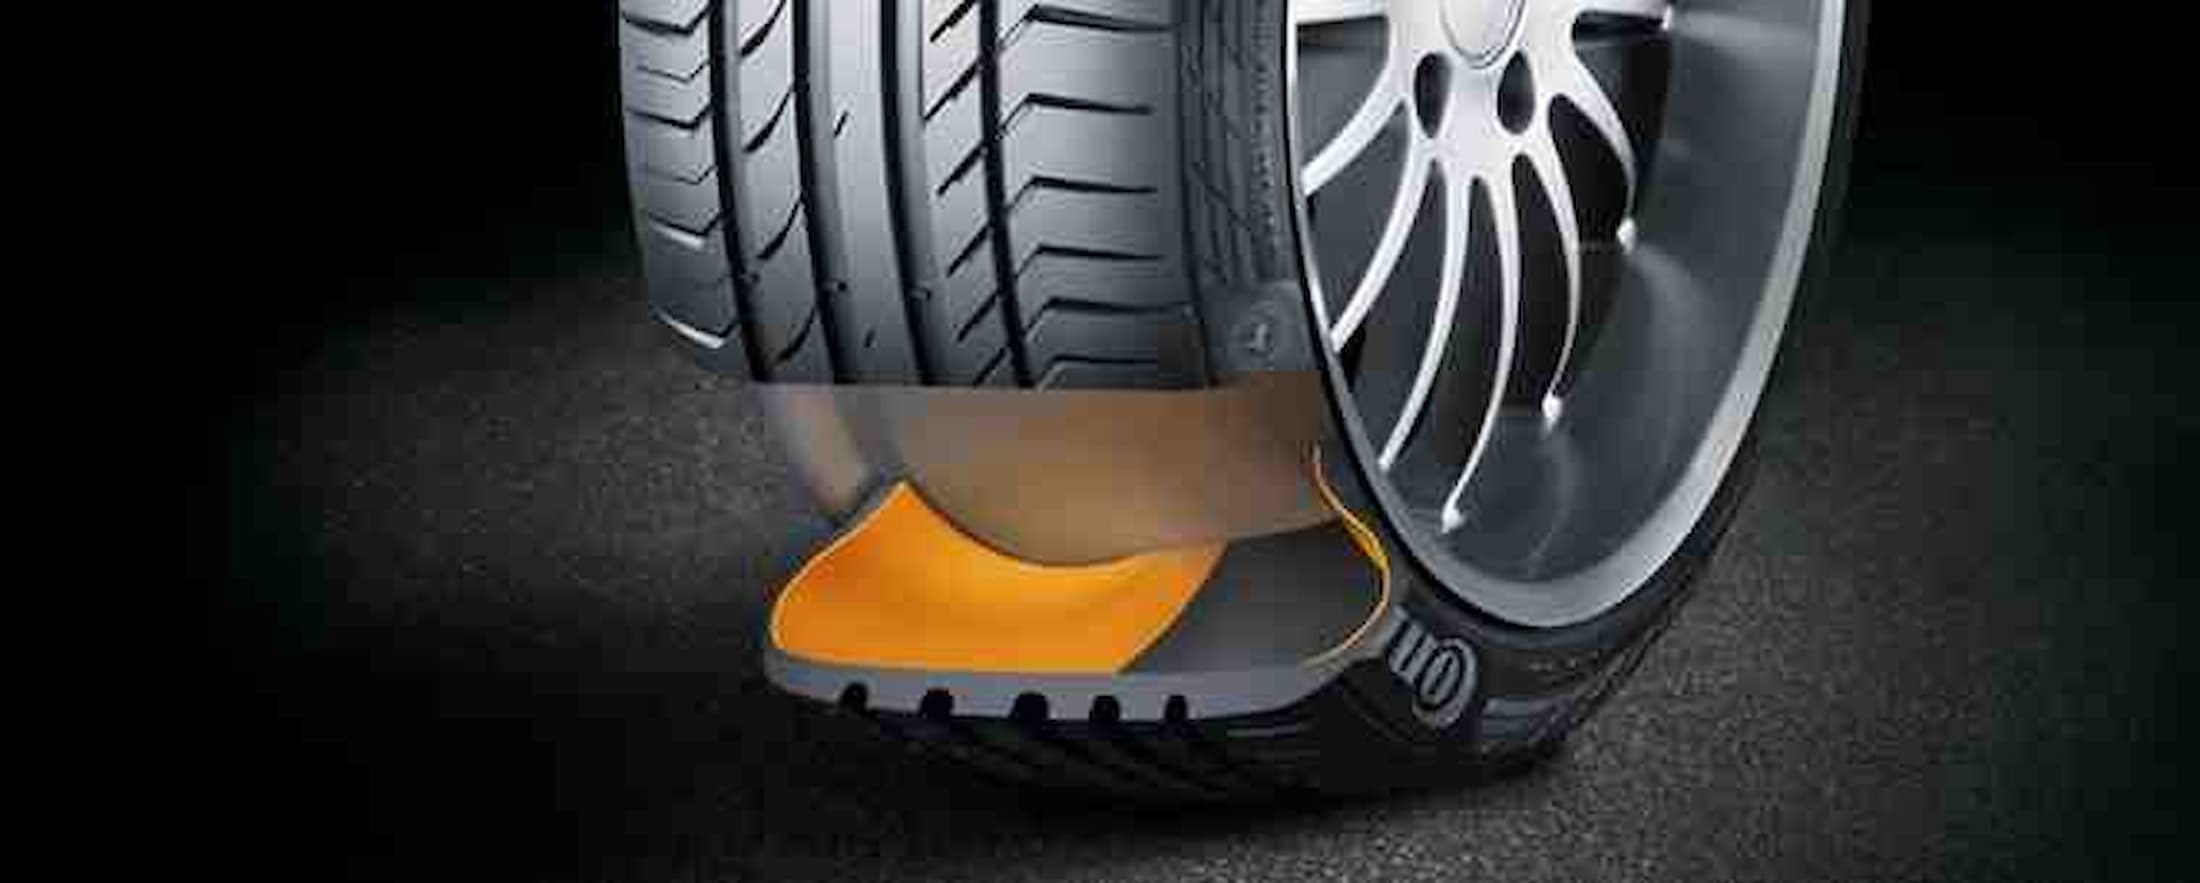 run flat tyres siti article kwikfit header 1